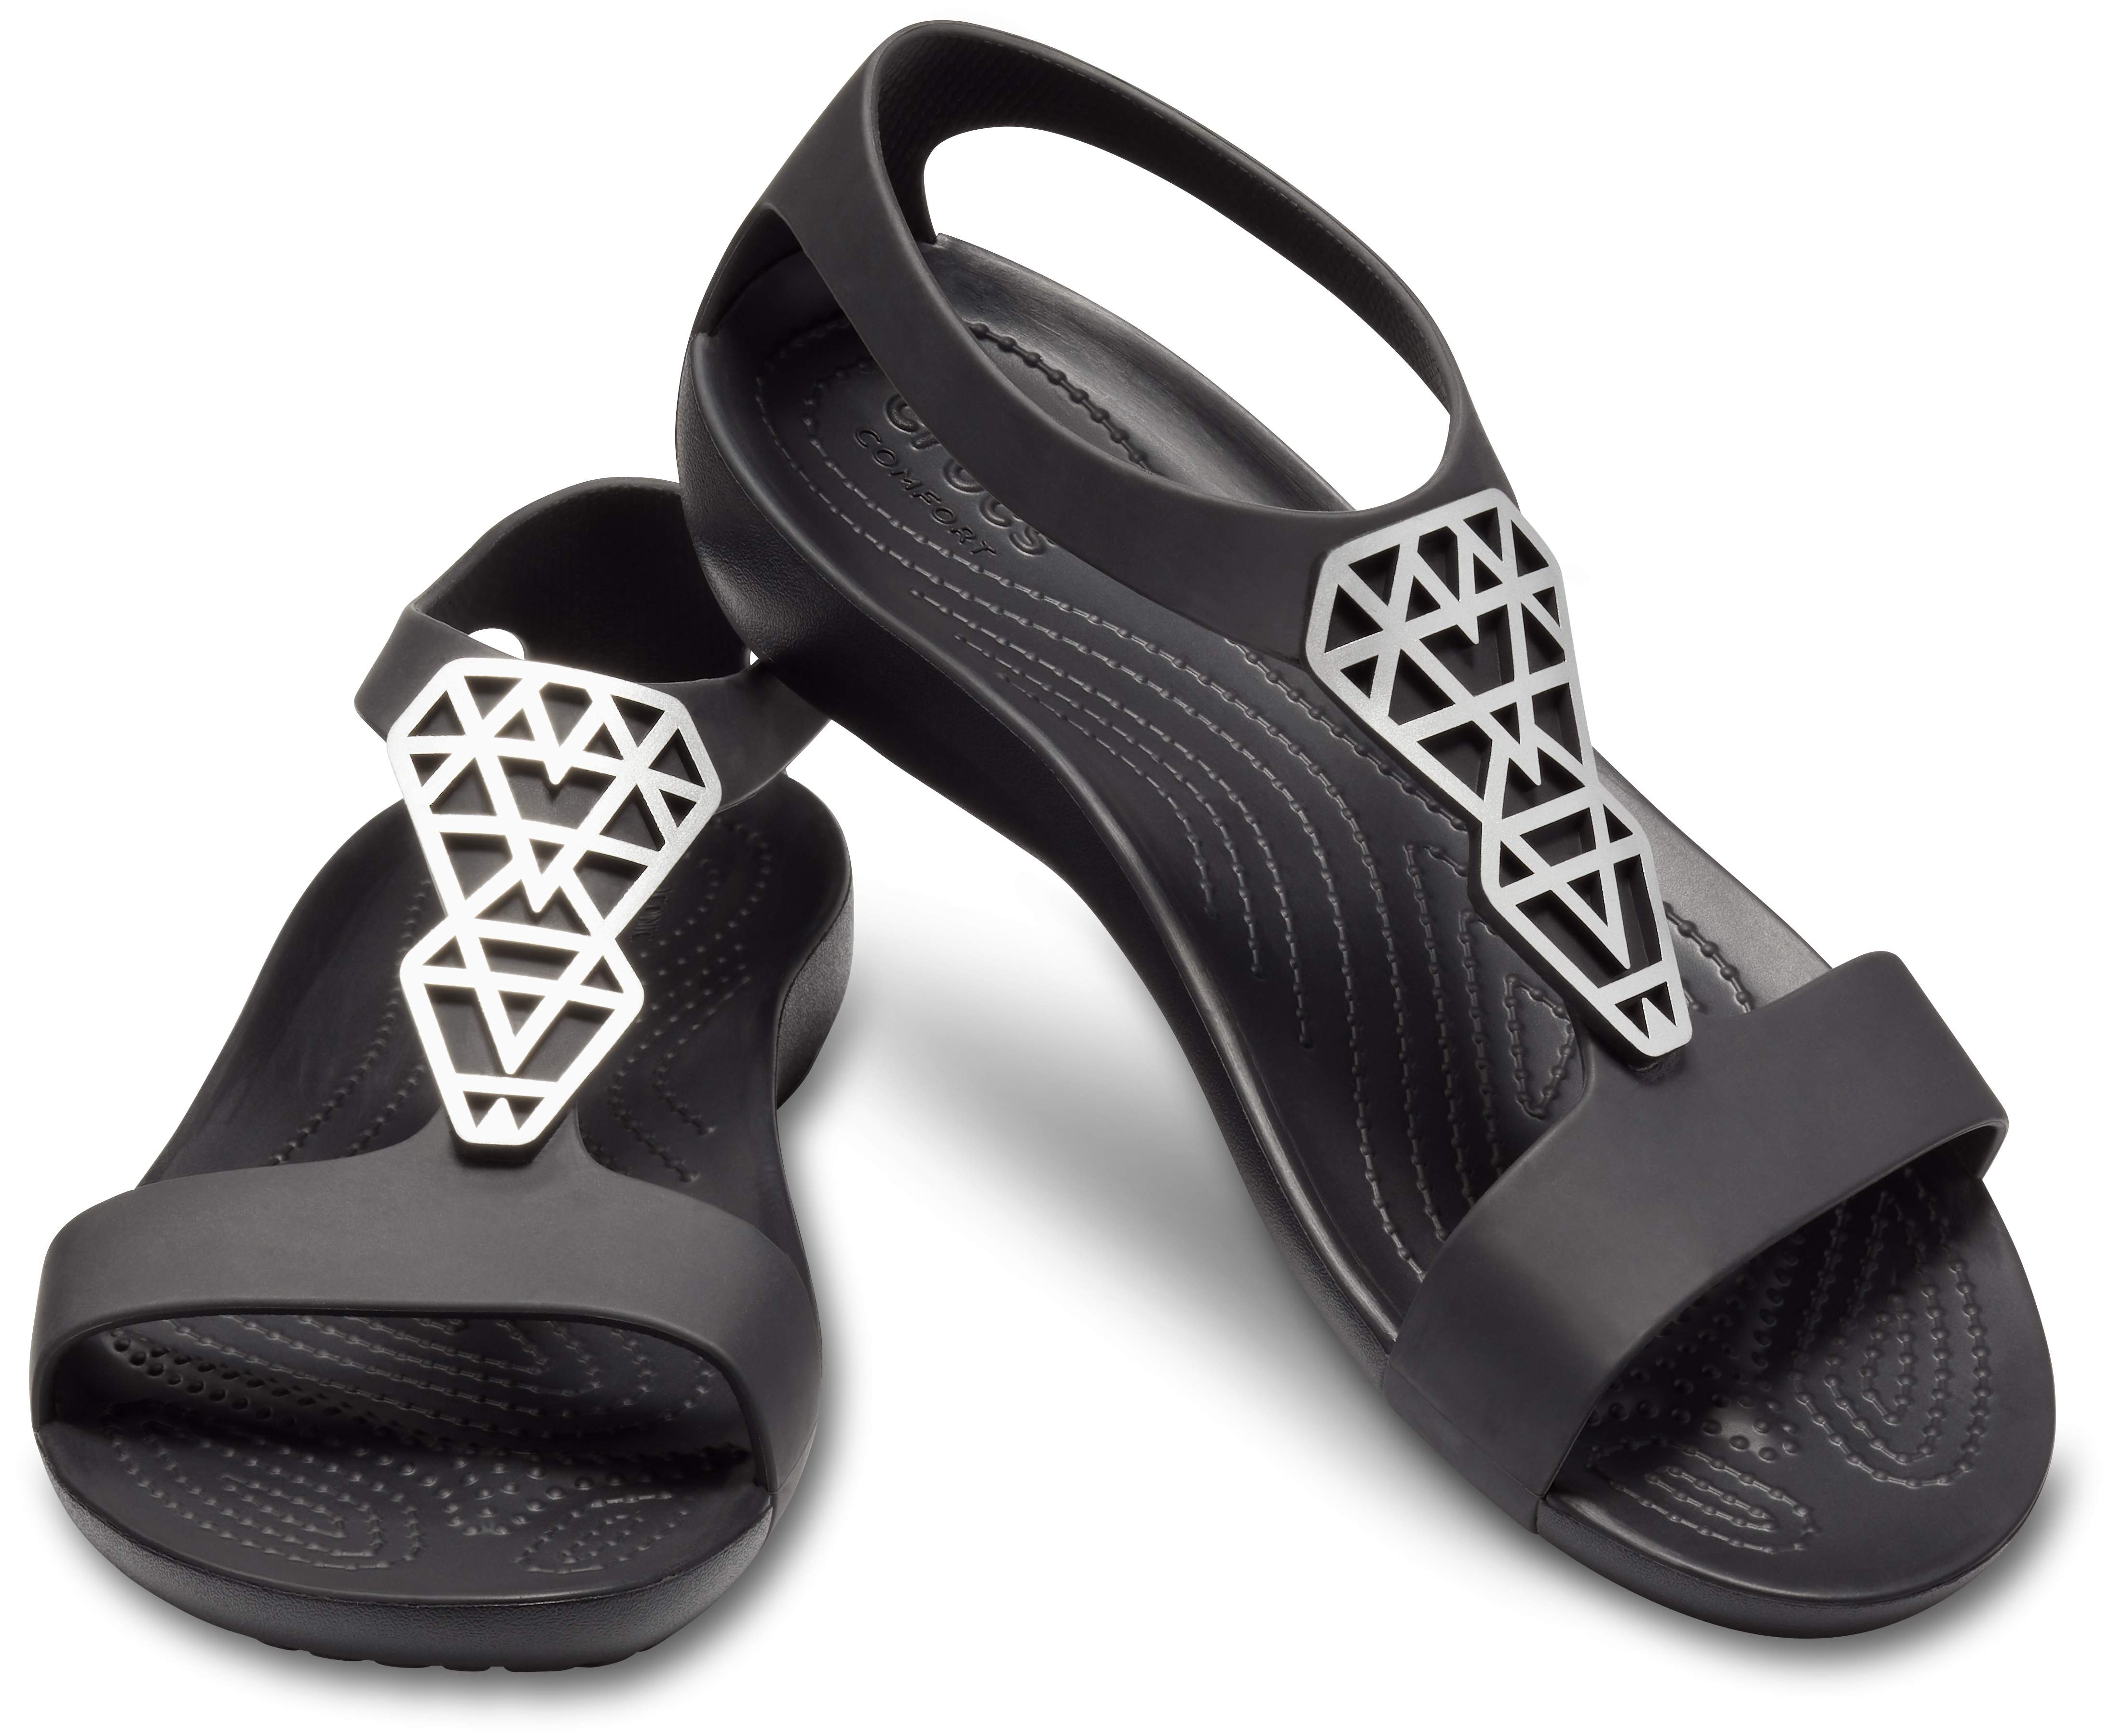  Crocs  Women S Crocs  Serena Embellished Sandal Choose size 